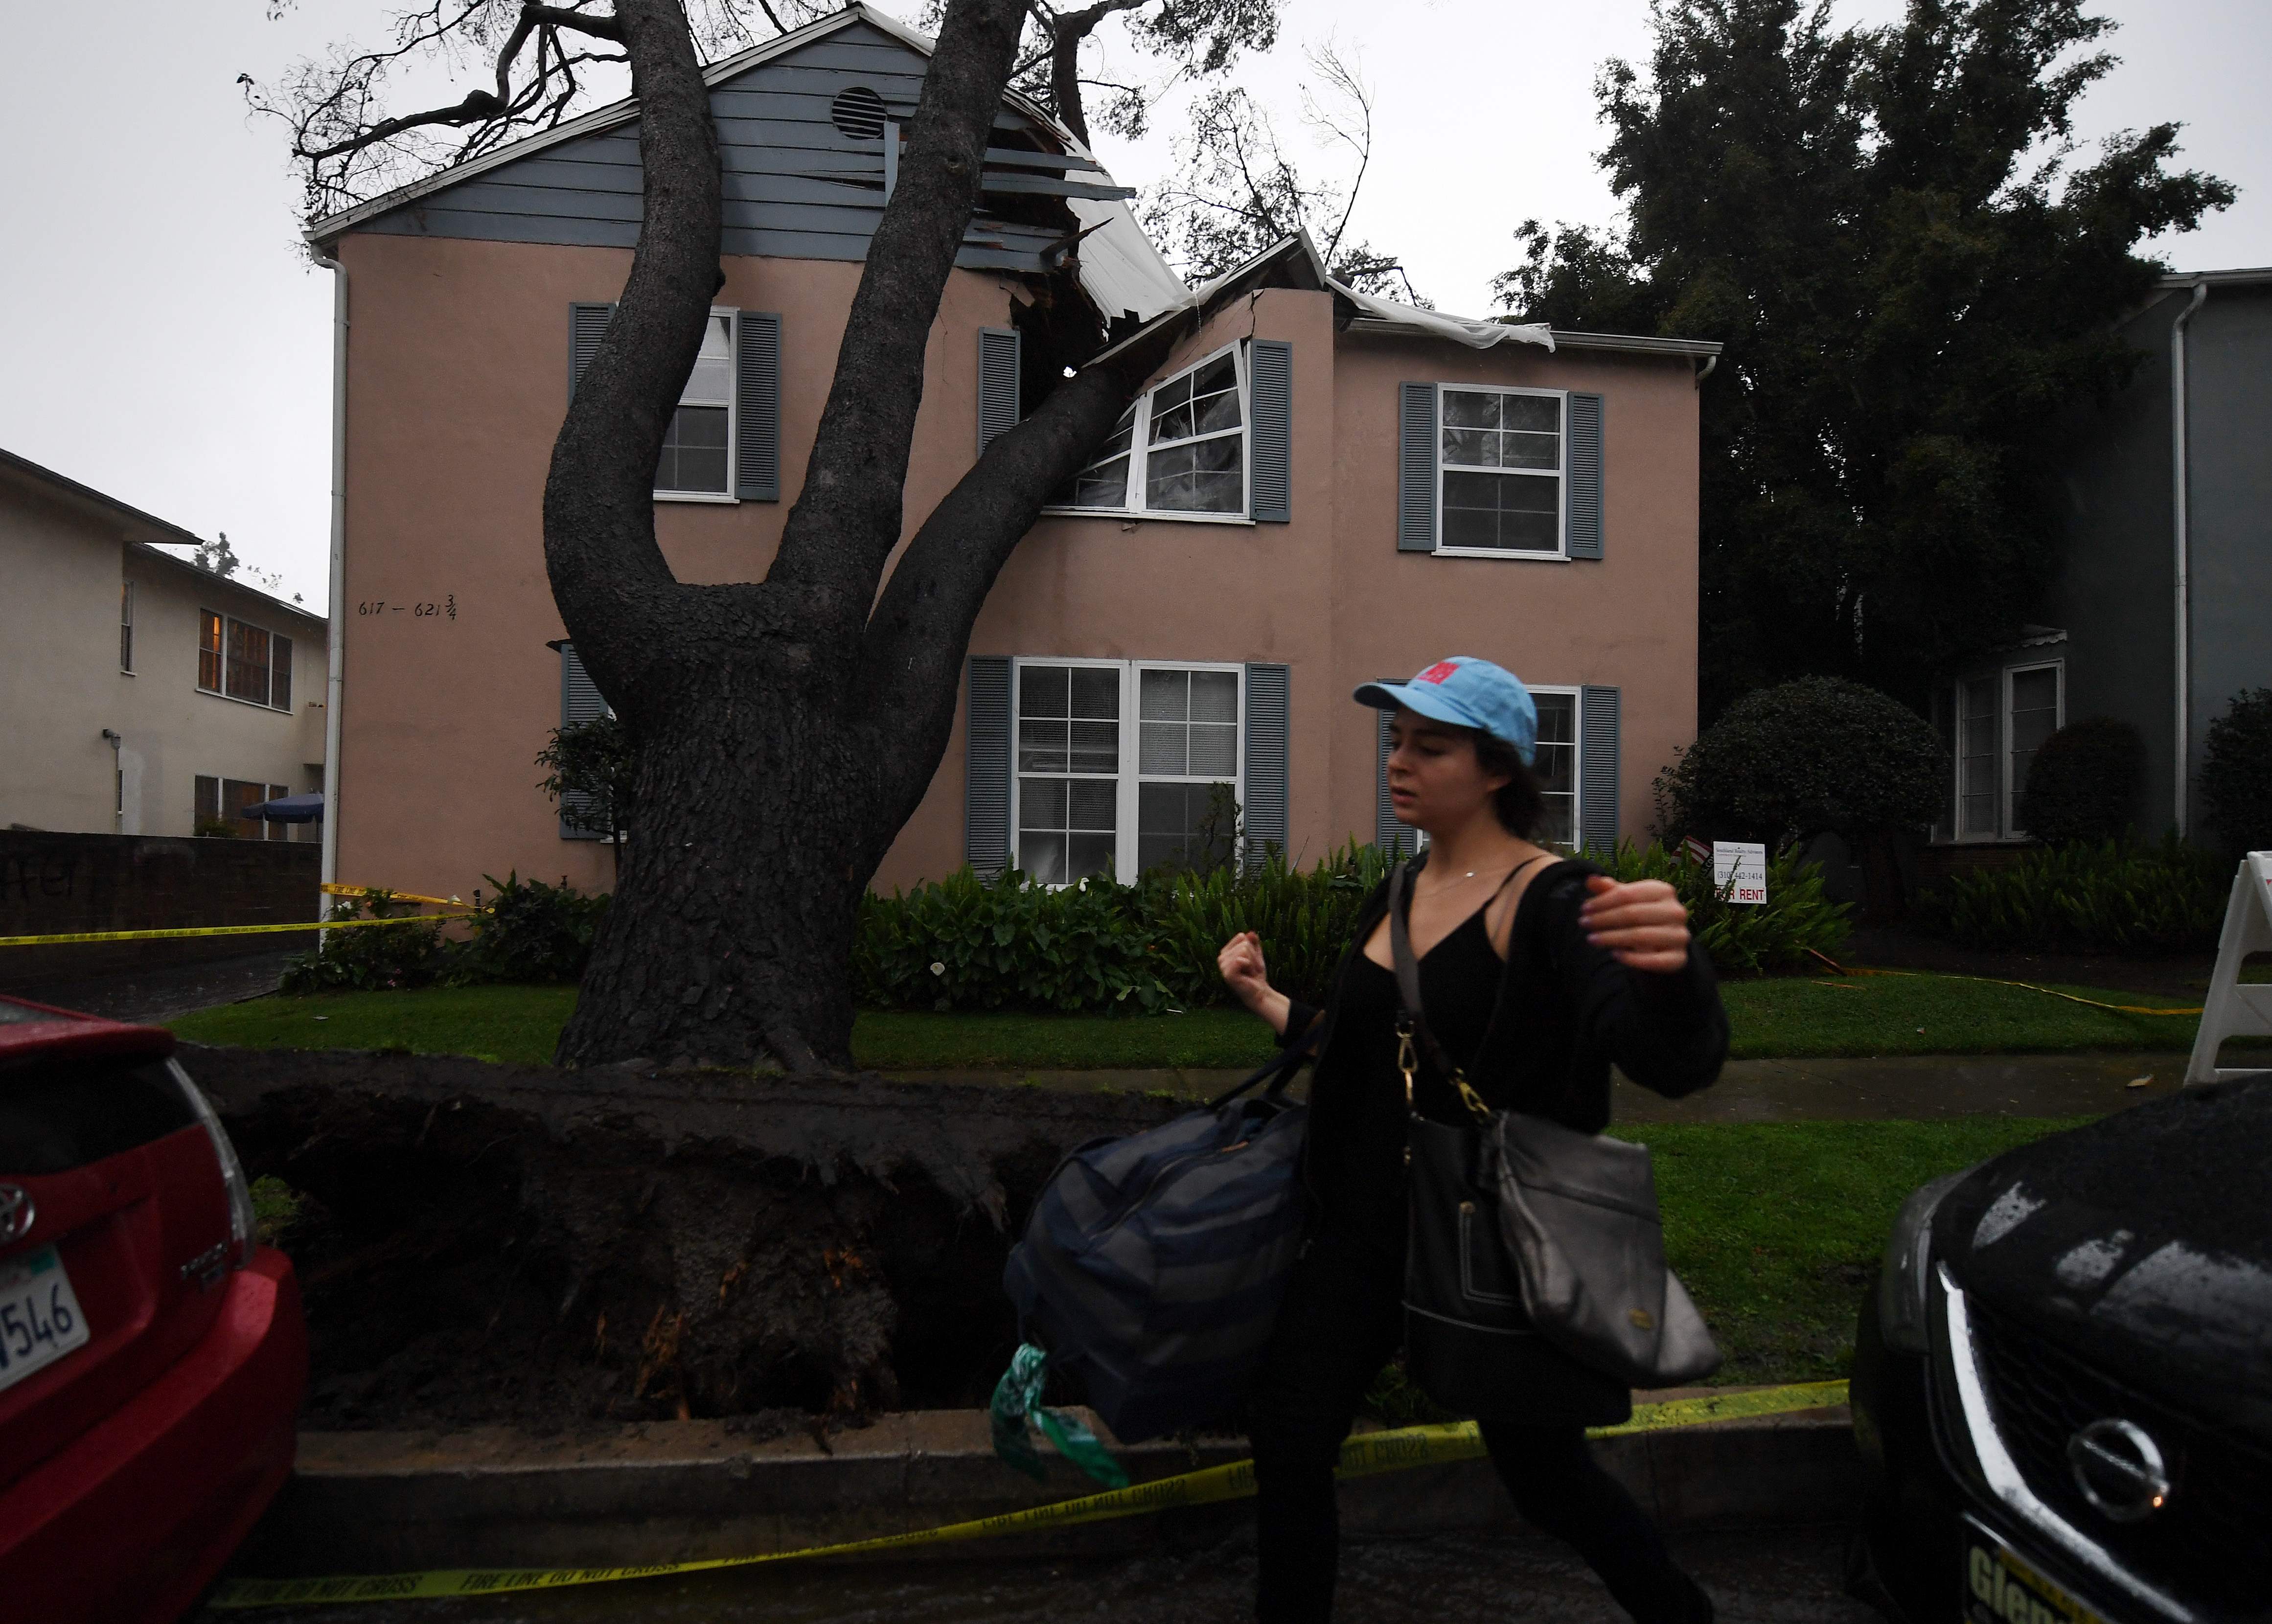 مواطنة أمريكية تغادر منزلها المتحطم أثر سقوط شجرة عليه عقب العاصفة